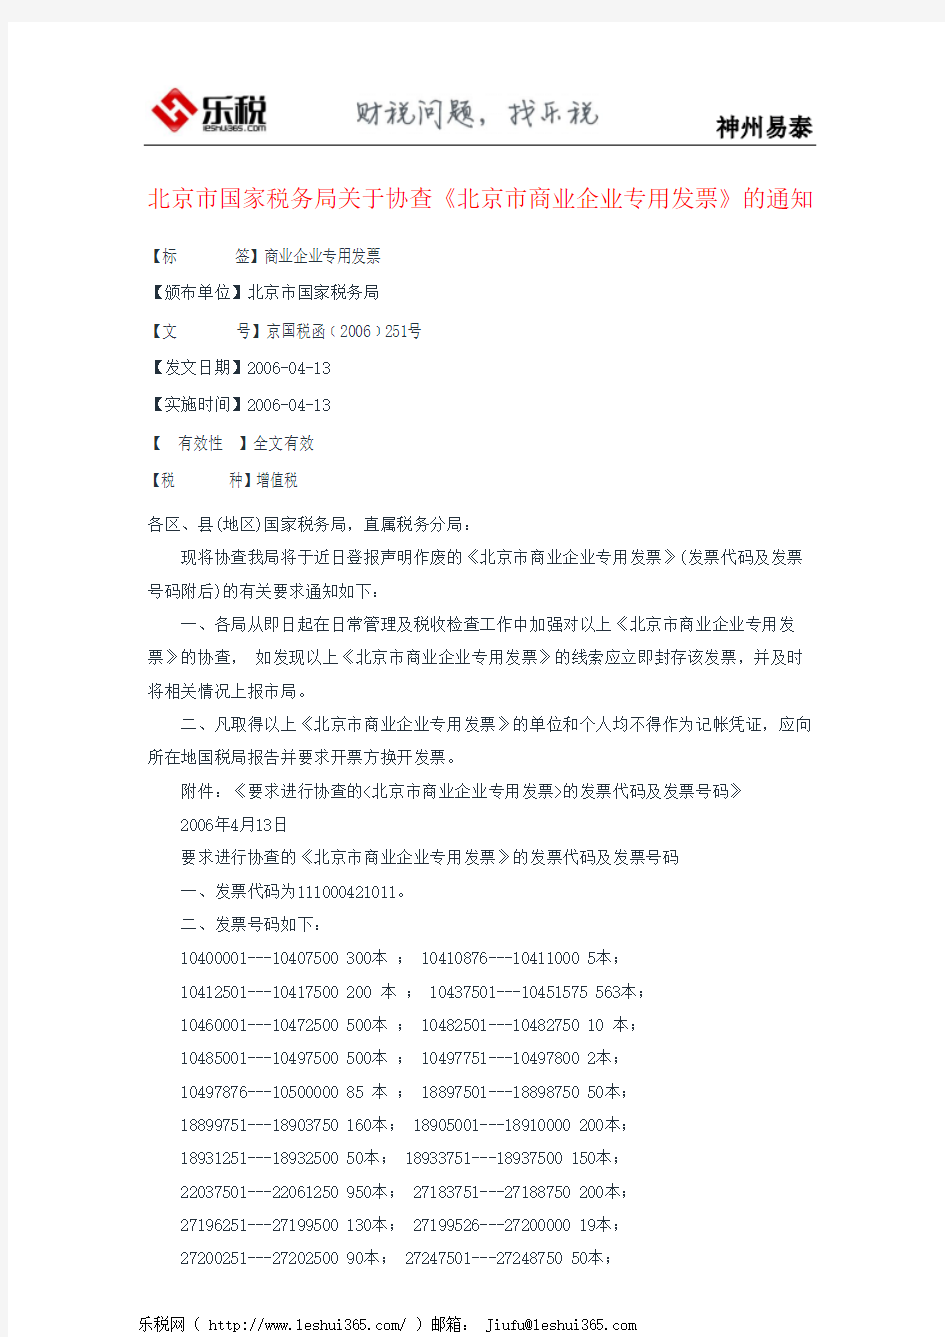 北京市国家税务局关于协查《北京市商业企业专用发票》的通知